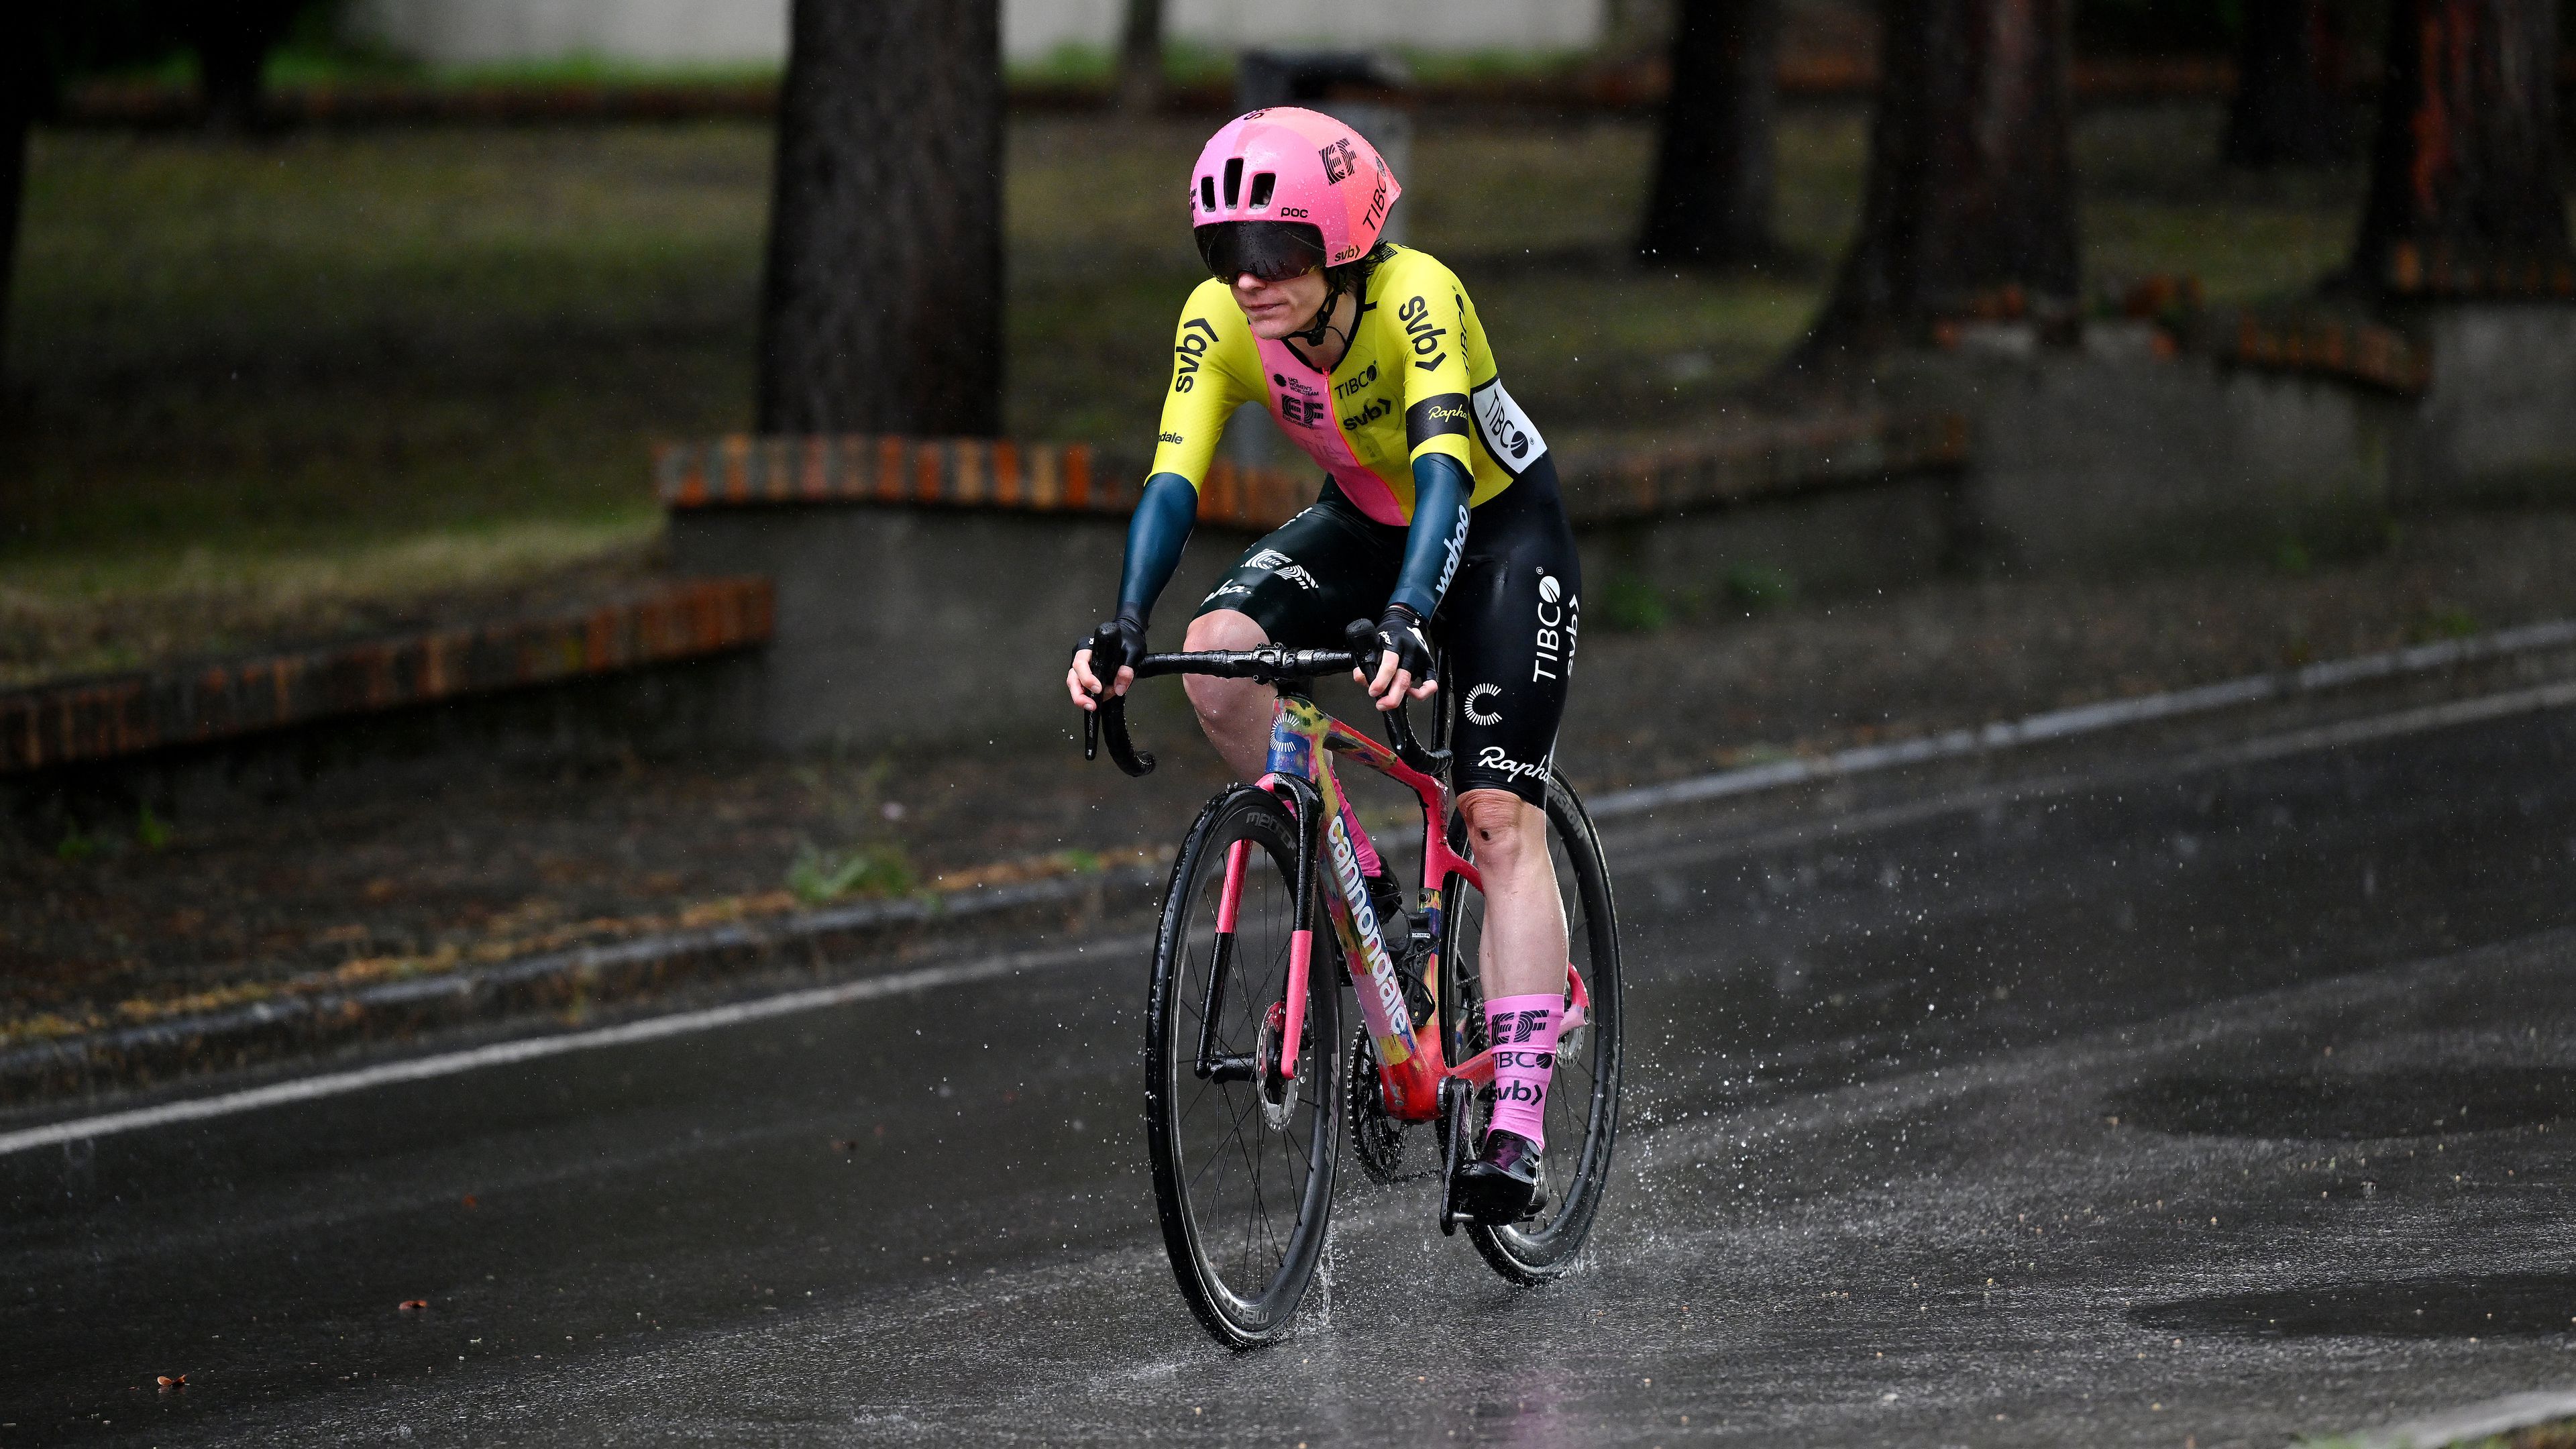 Rossz idő miatt törölték a női Giro d’Italia prológját